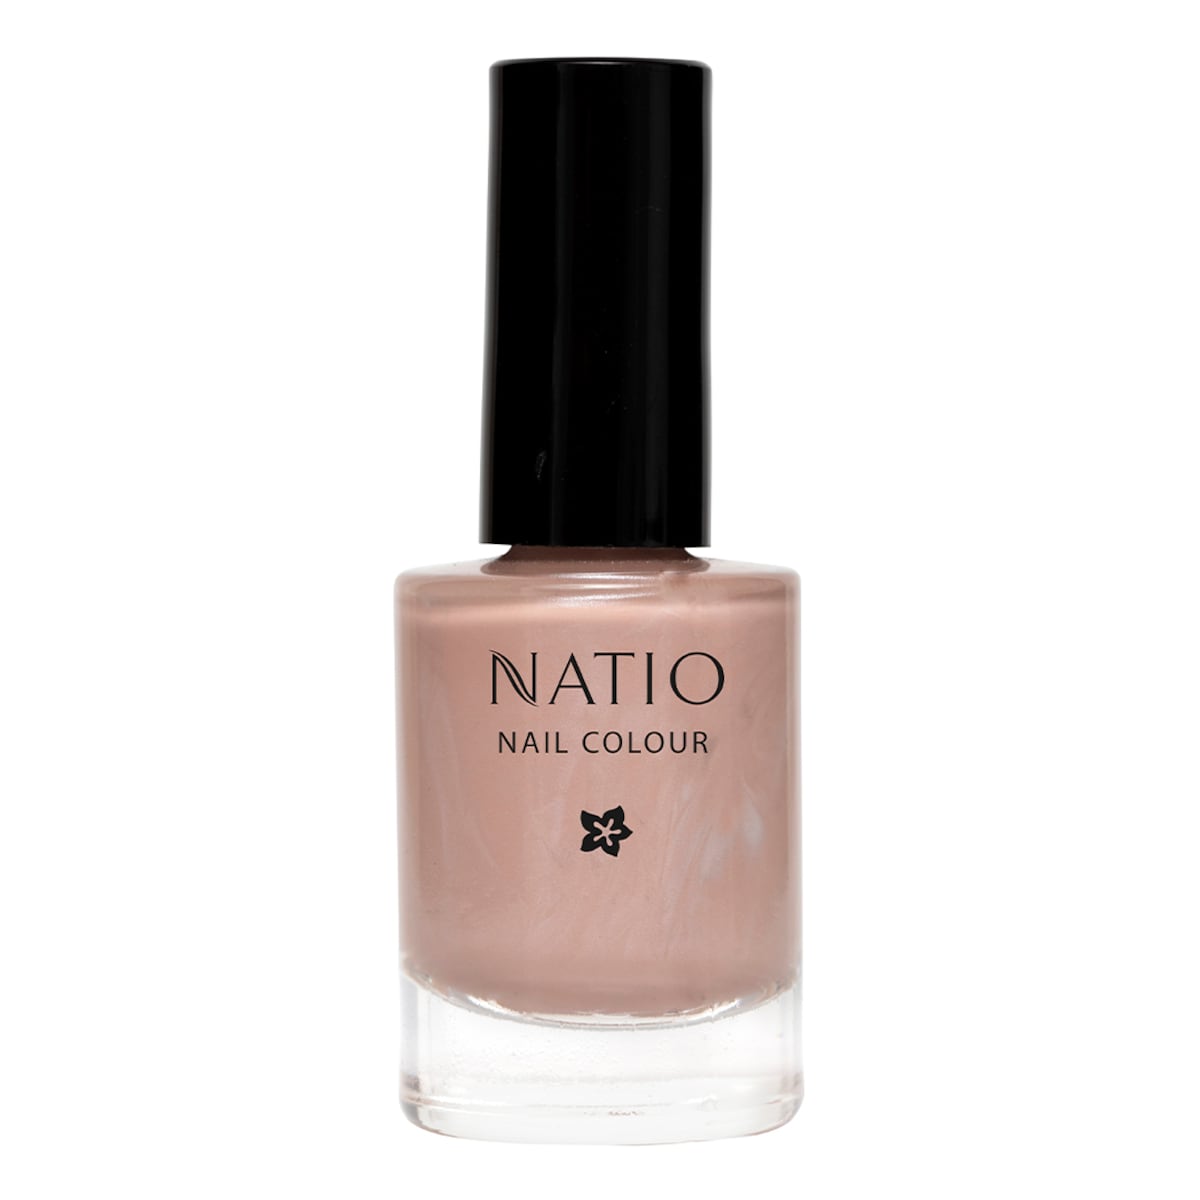 Natio Nail Colour Dune 10ml (New)